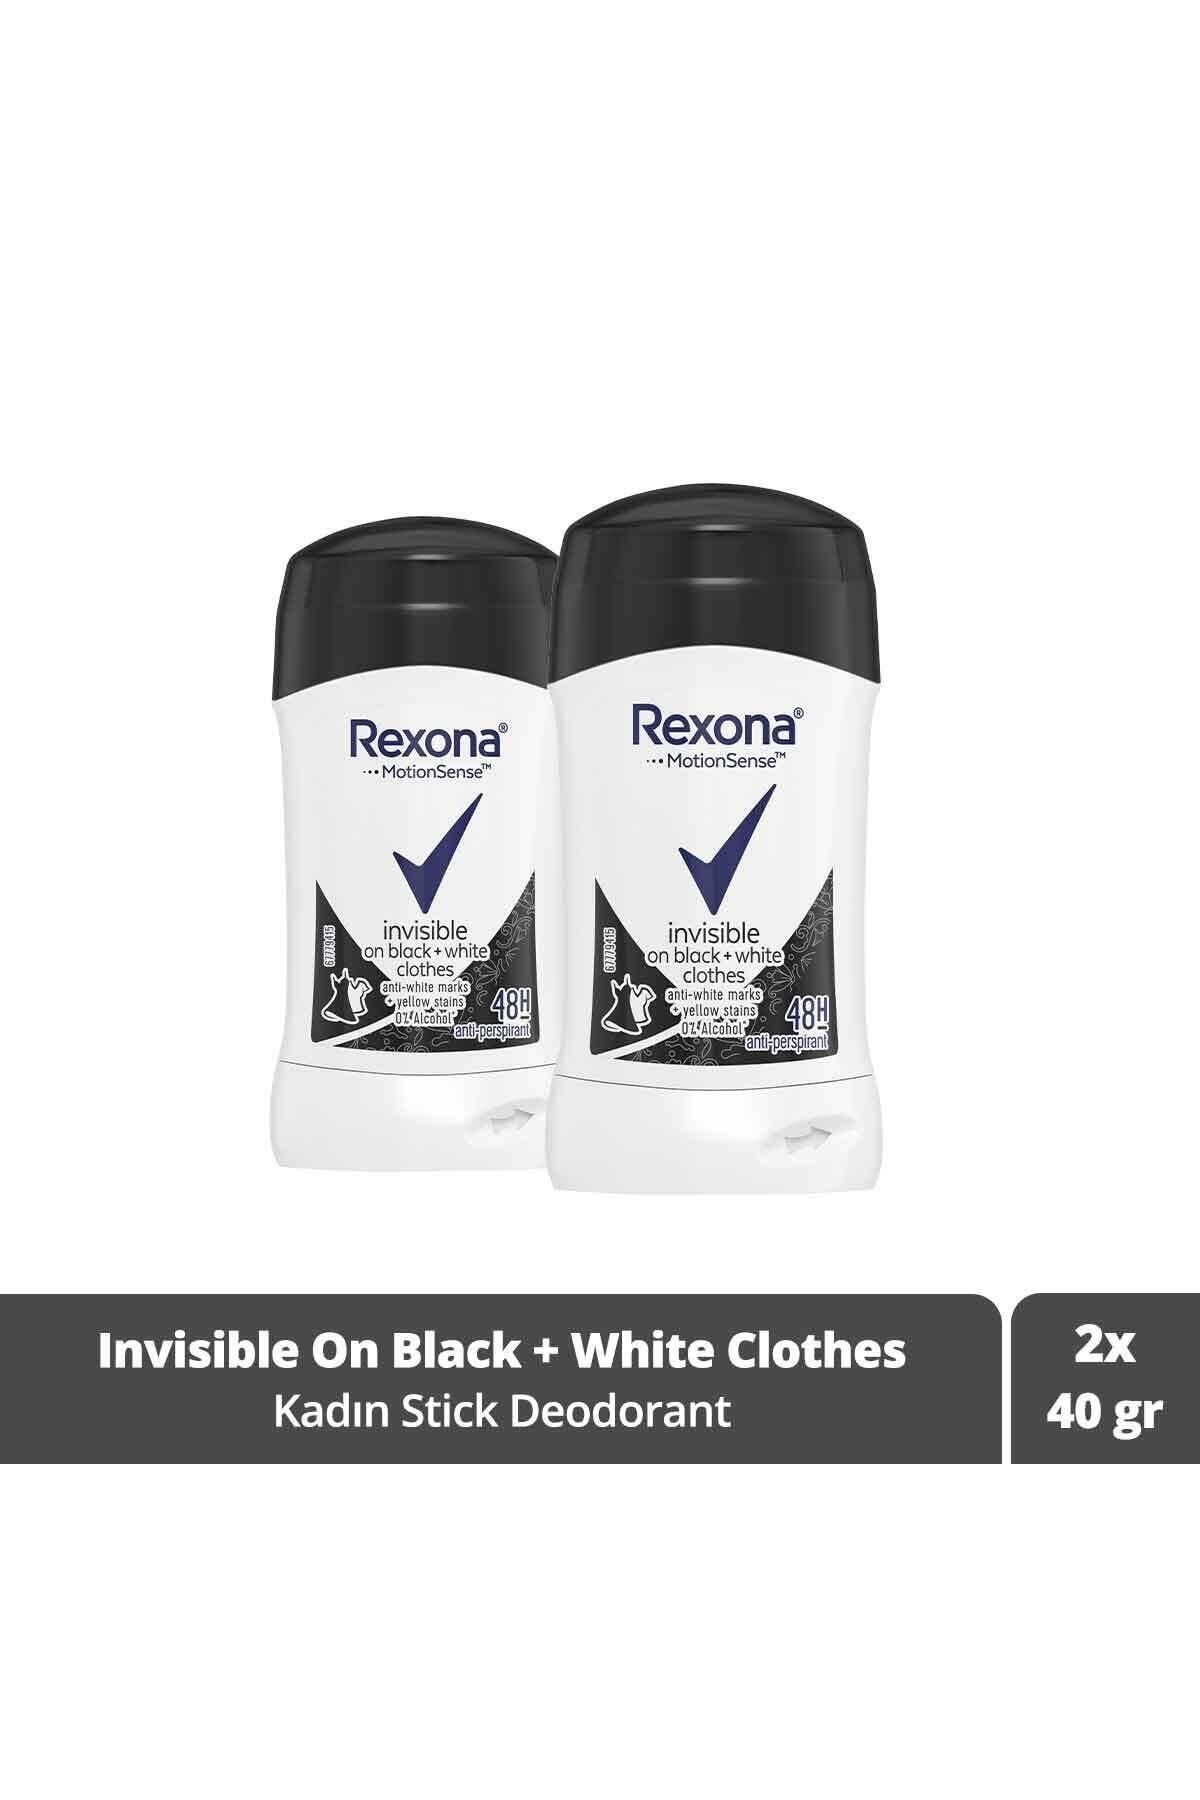 Rexona Motion Sense Kadın Stick Deodorant Invisible On Black + White Clothes 40 g X 2 Adet